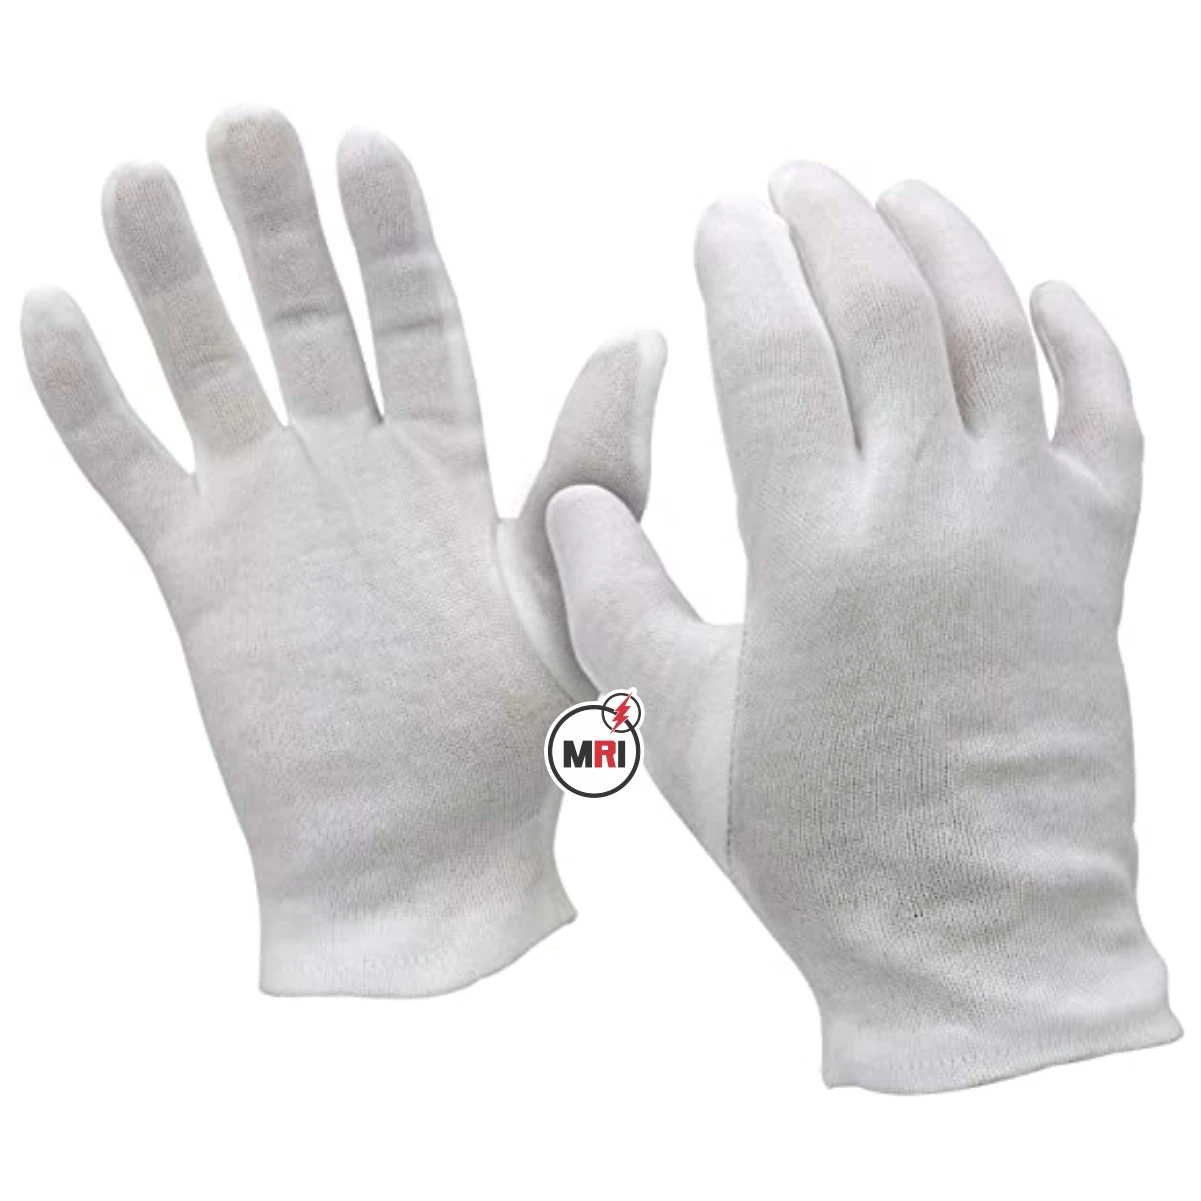 Лучшие продажи унисекс новый дизайн трикотажные хлопчатобумажные защитные перчатки оптом хорошее качество хлопчатобумажные перчатки